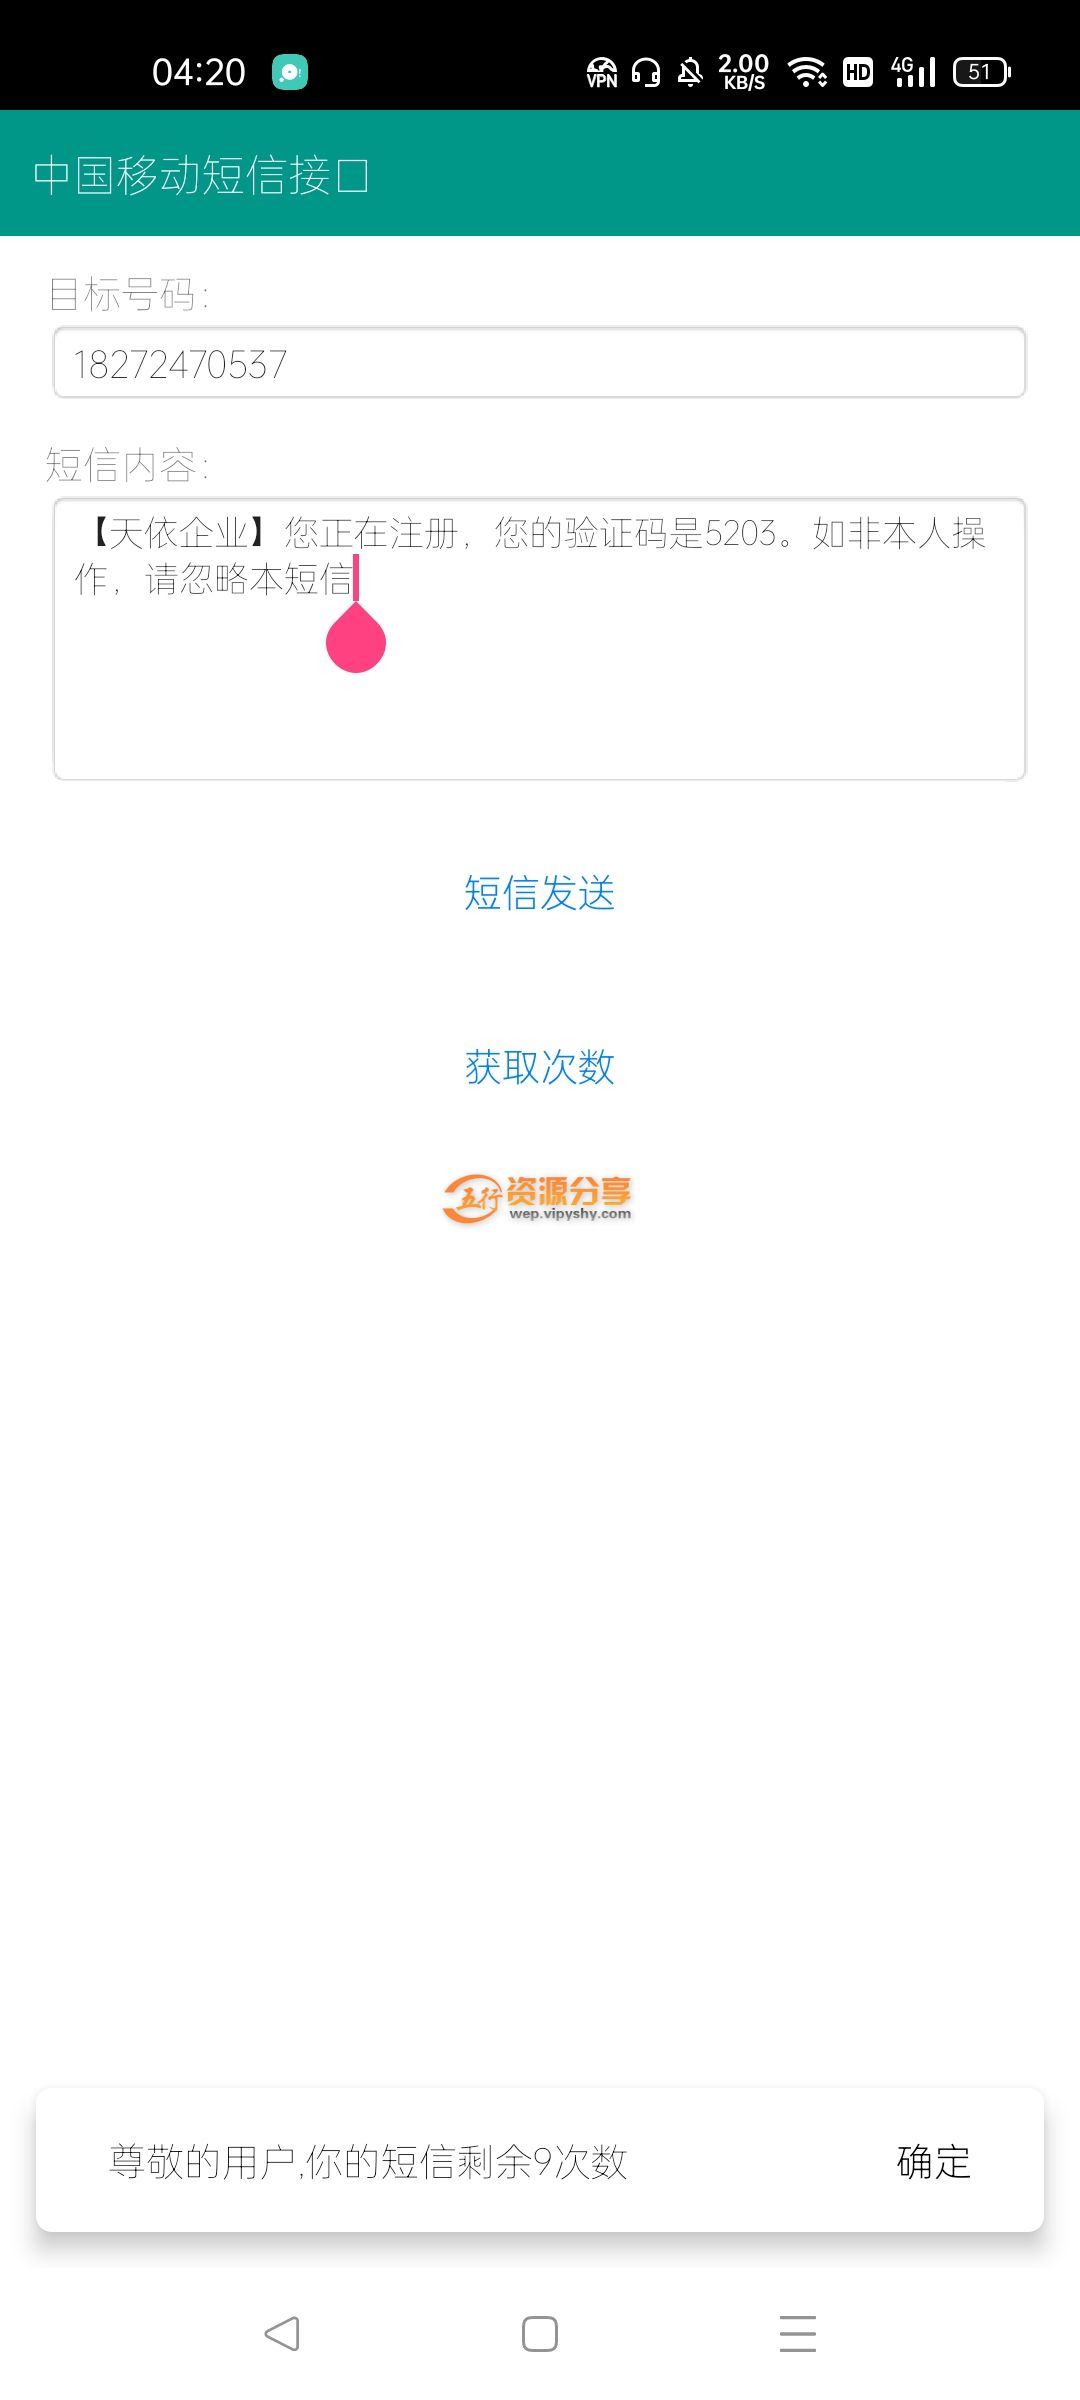 【原创 IAPP源码】中国移动短信接口-相关图片介绍